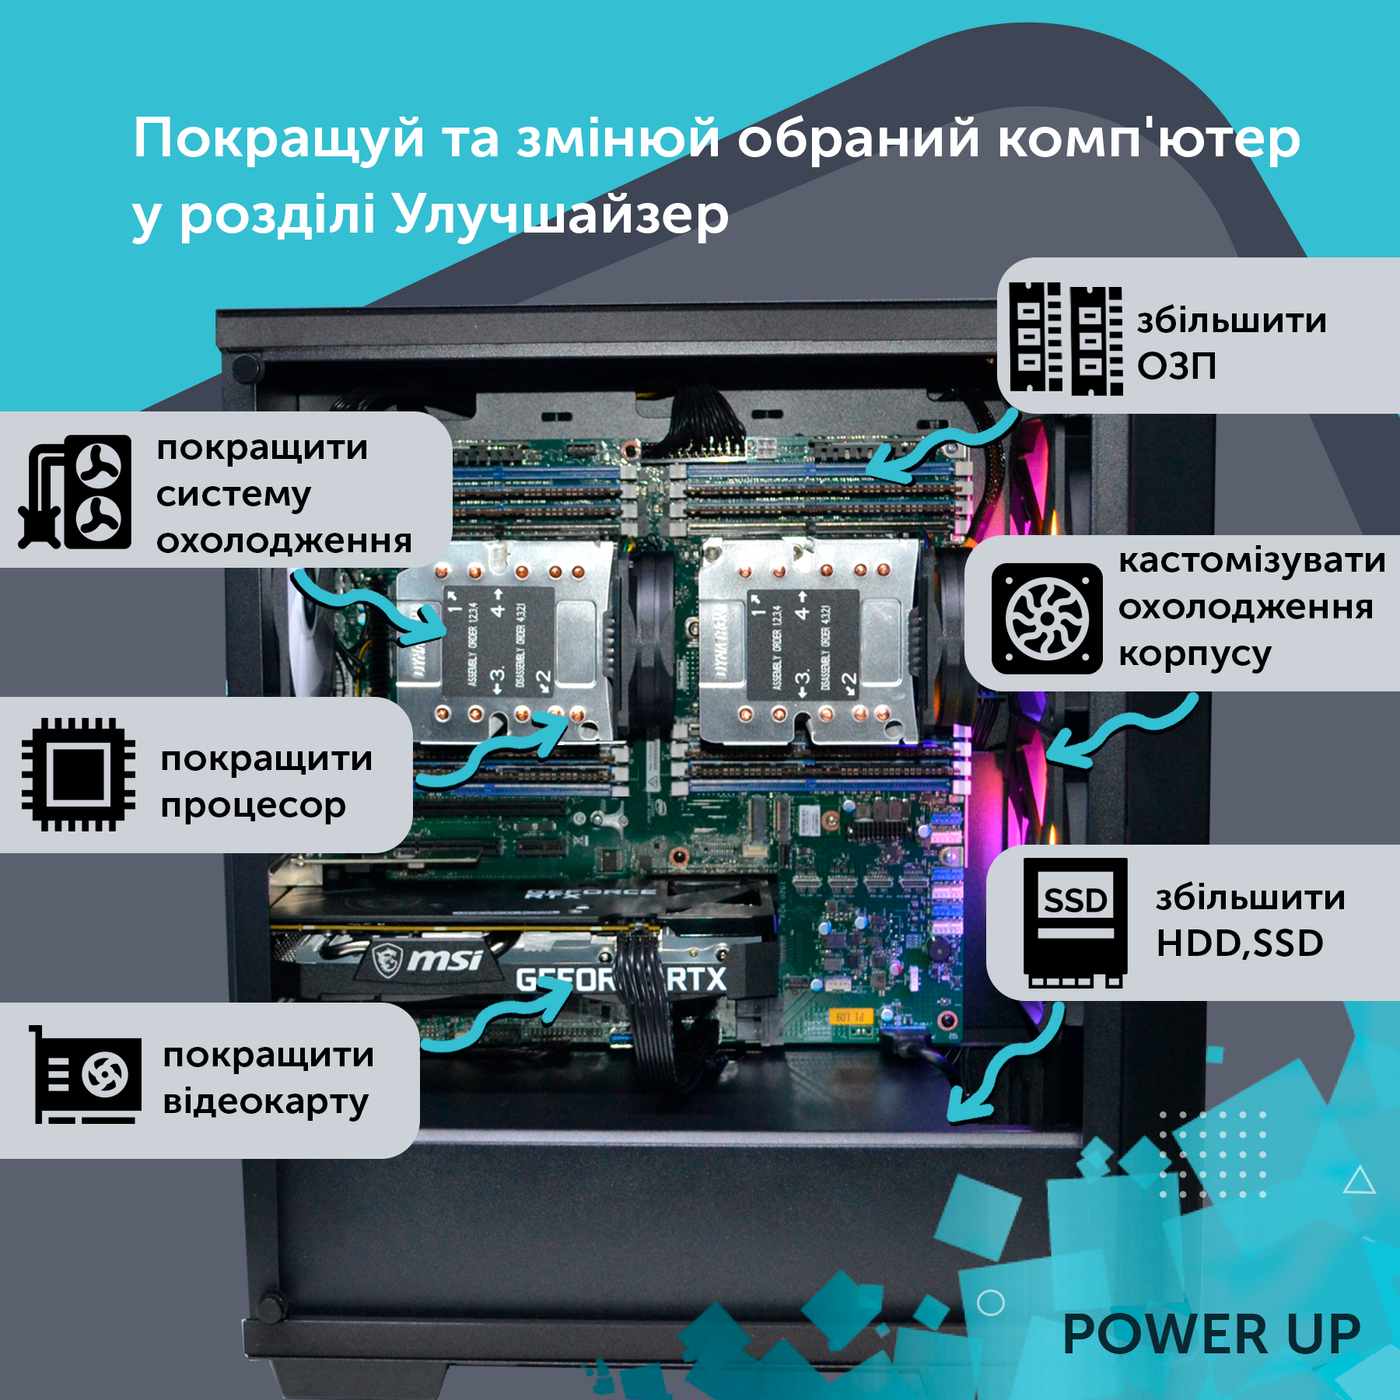 Рабочая станция PowerUp Desktop #216 Core i7 13700K/64 GB/HDD 1 TB/SSD 512GB/GeForce RTX 3060 12GB